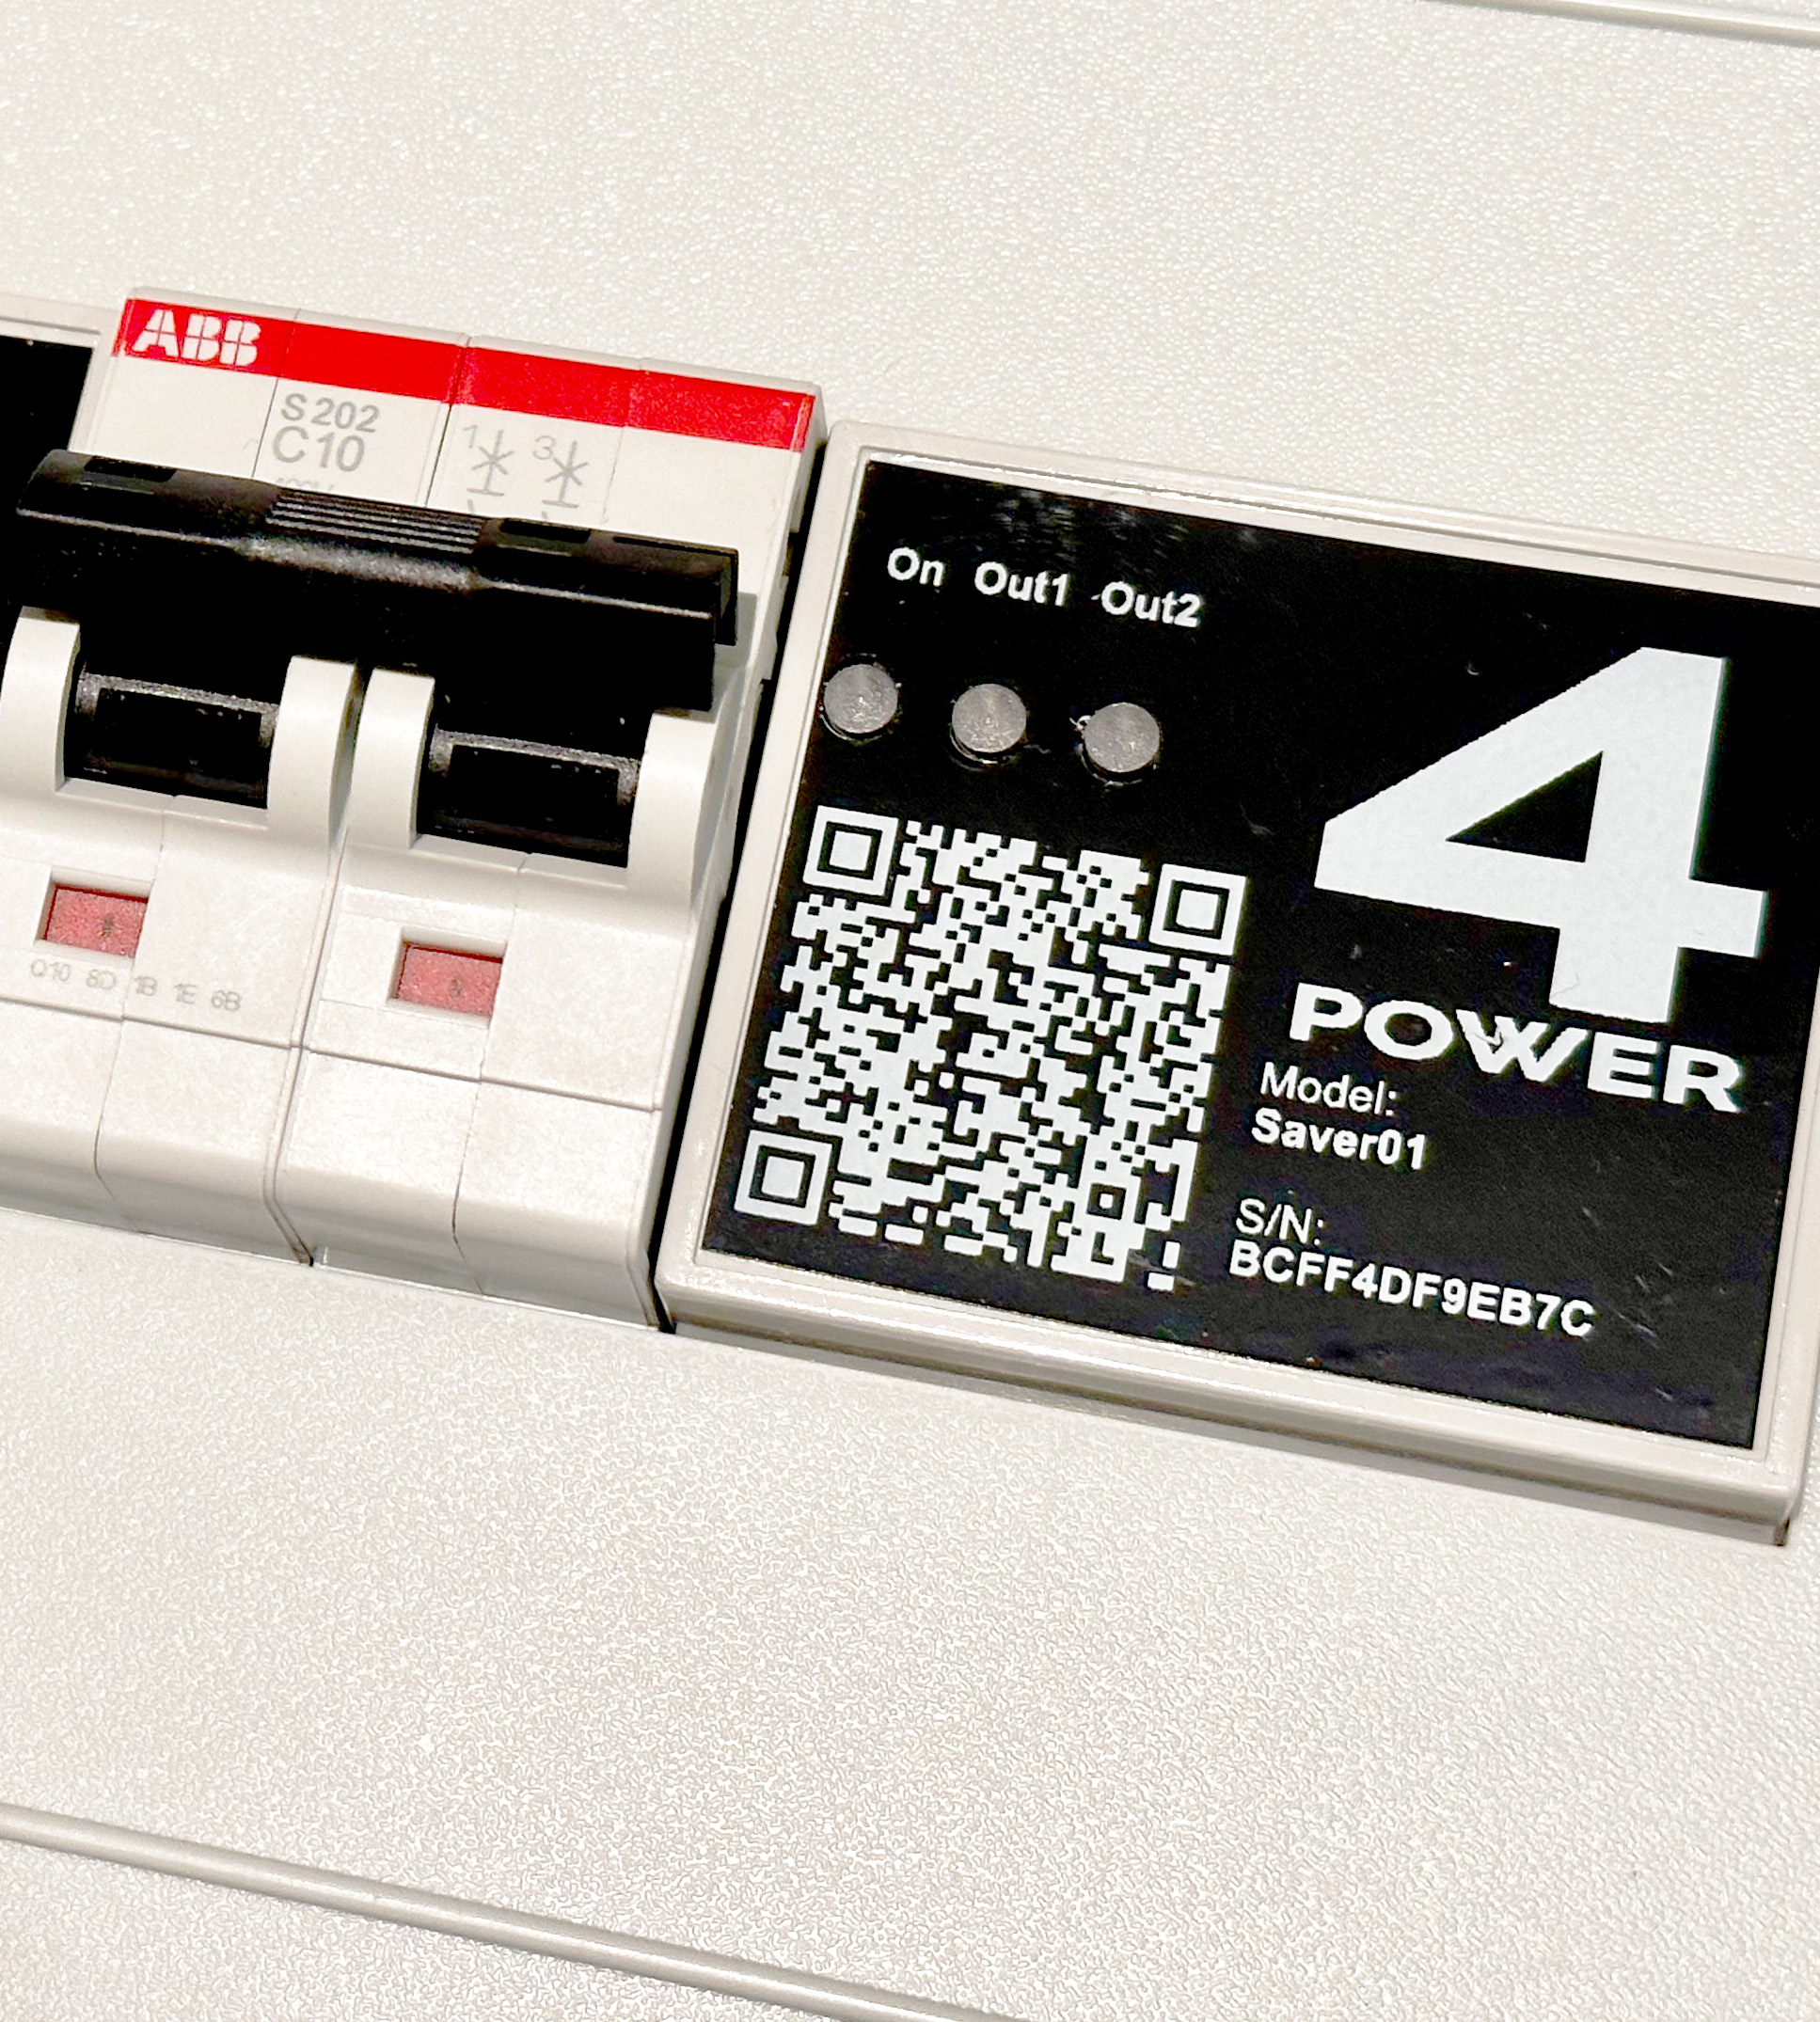 Saver01 modul i eltavle, sikrer optimalt strømforbrug.